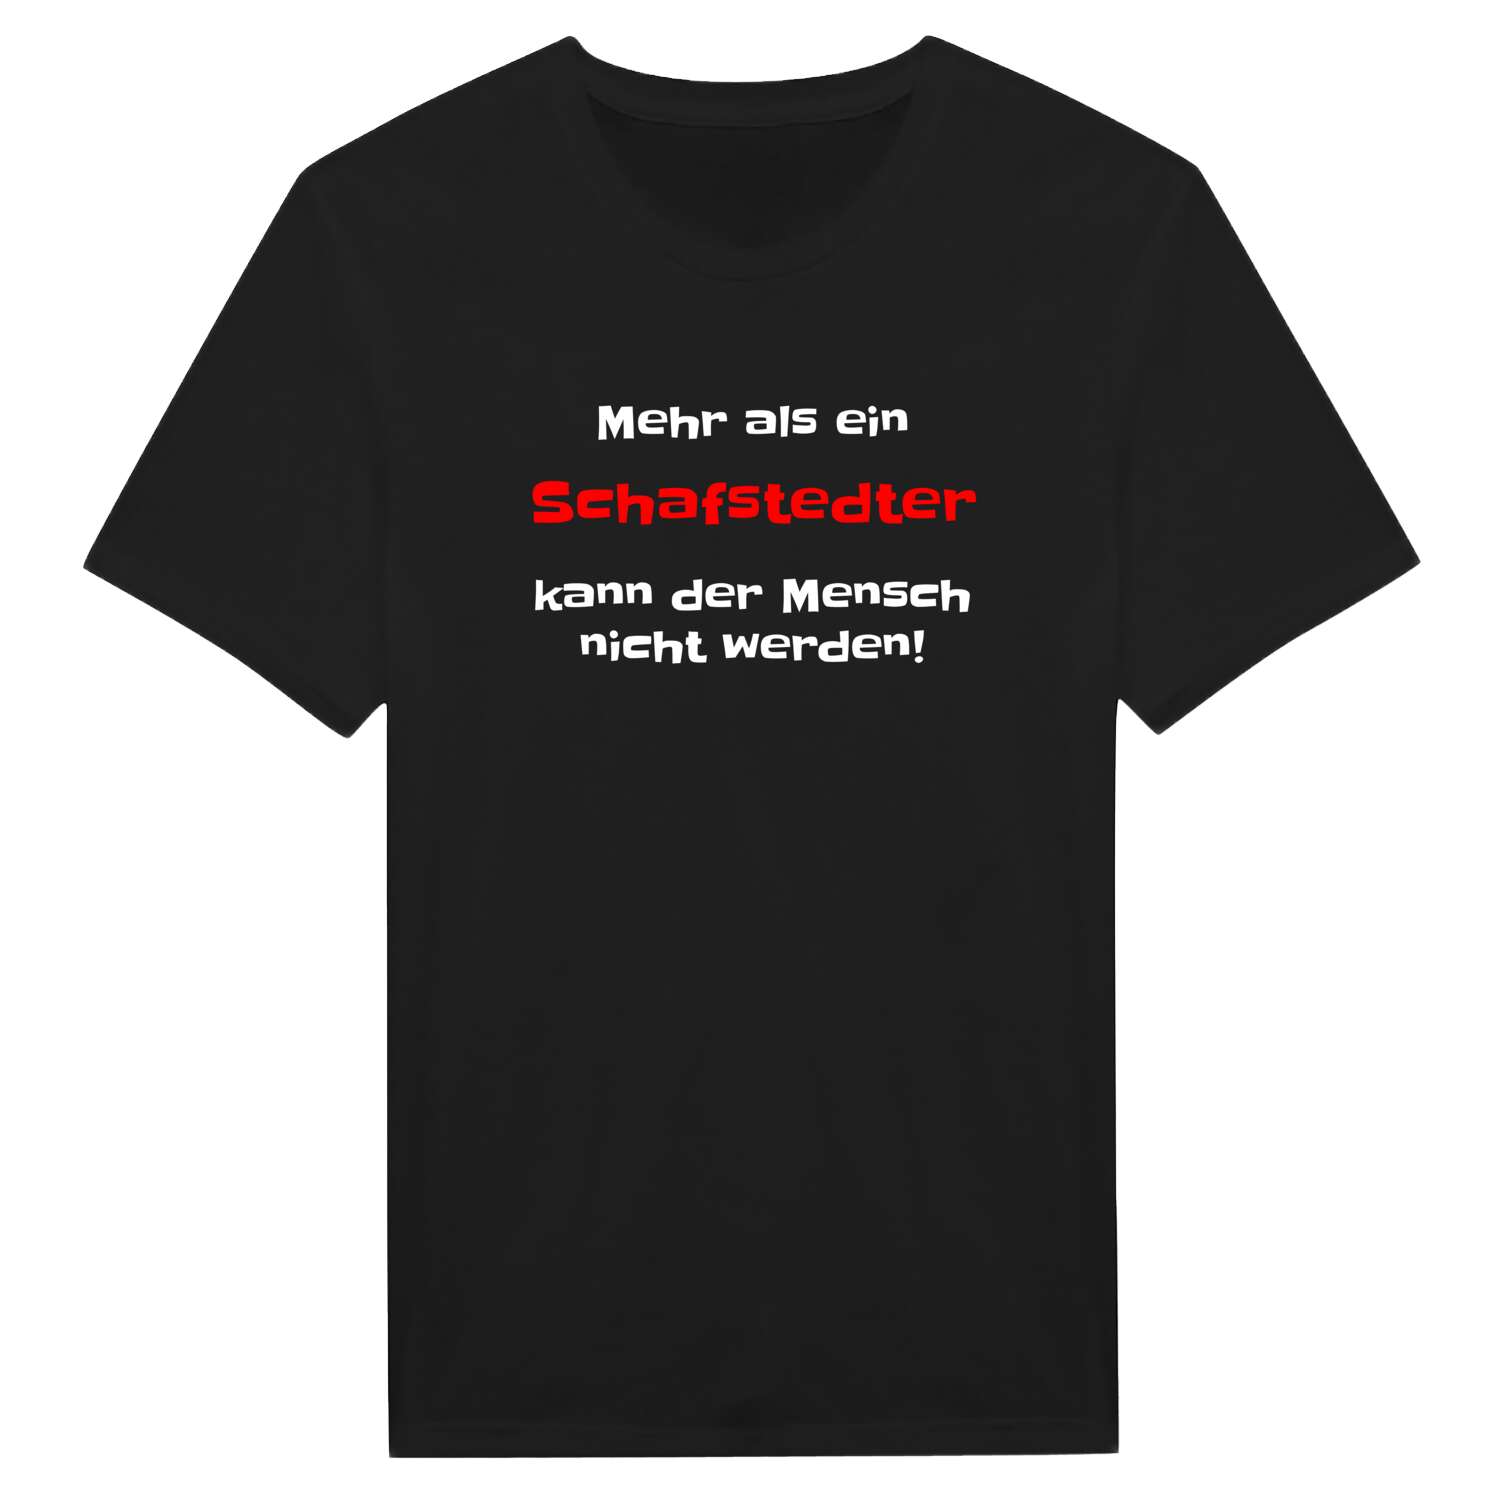 Schafstedt T-Shirt »Mehr als ein«